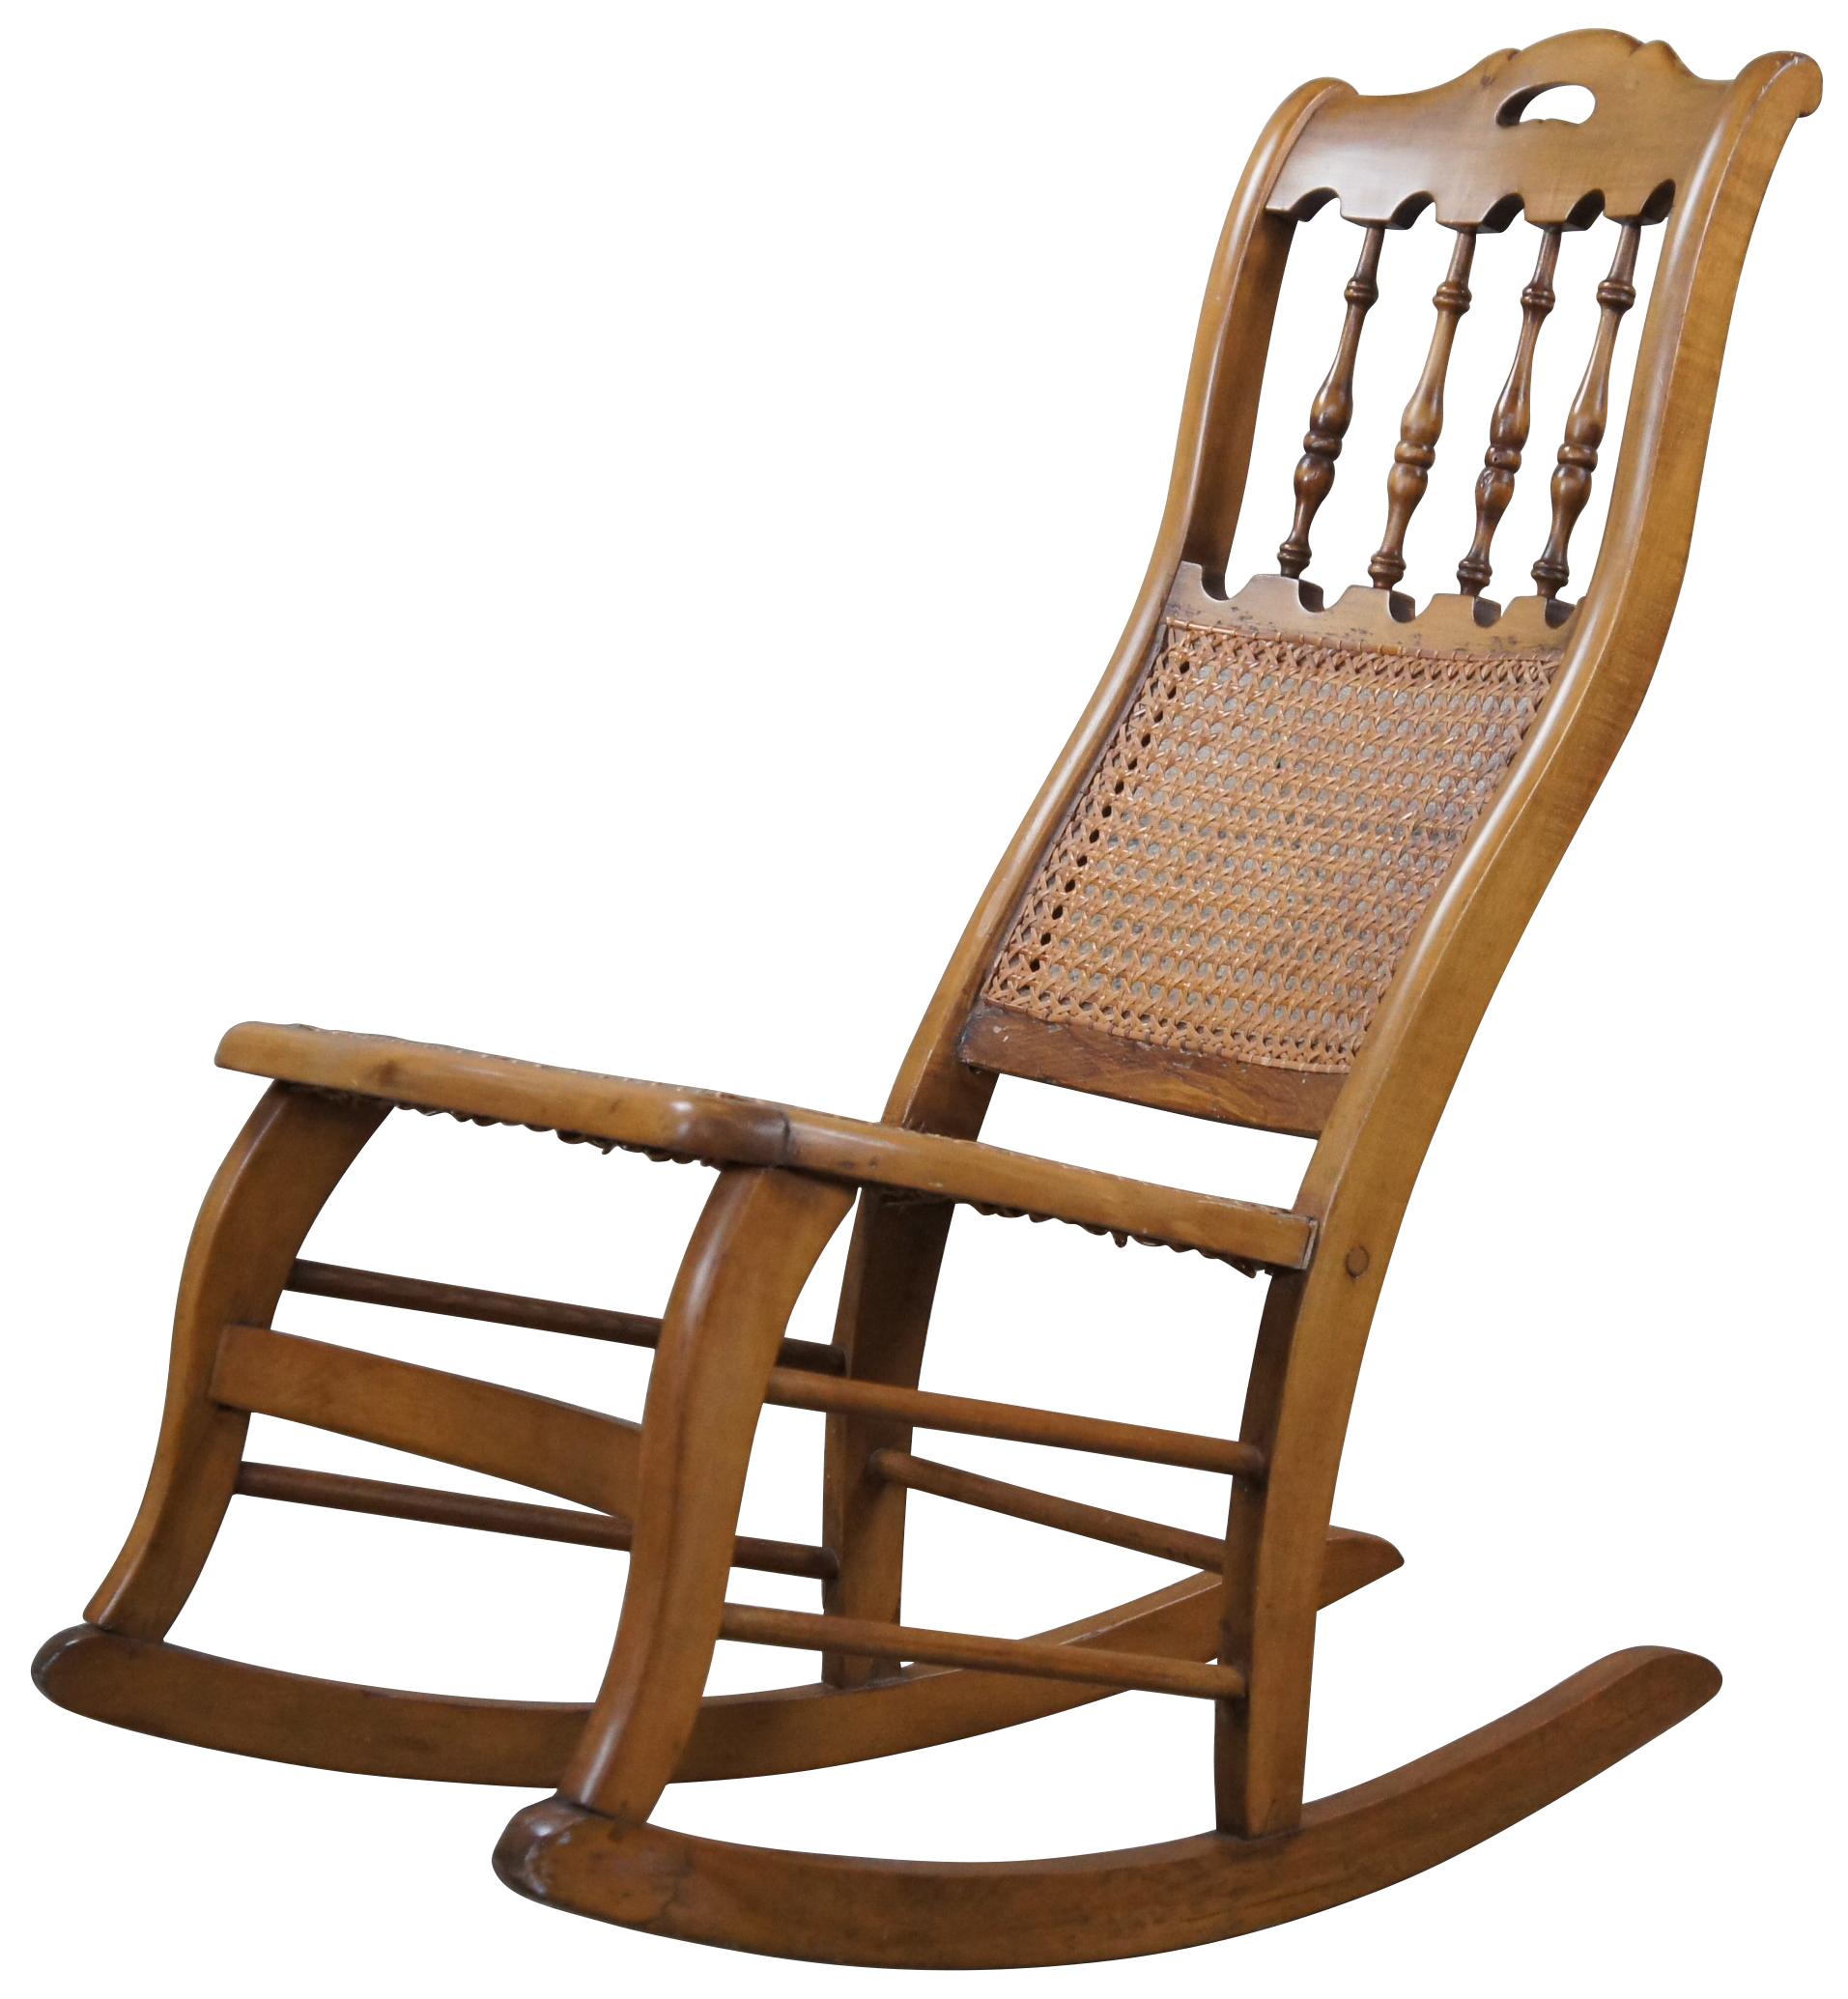 Un pittoresque fauteuil à bascule américain, datant des années 1900. Fabriqué en érable avec un dos en forme de broche centré entre des garnitures de type arcade. La chaise est dotée d'une assise et d'un dossier en rotin.